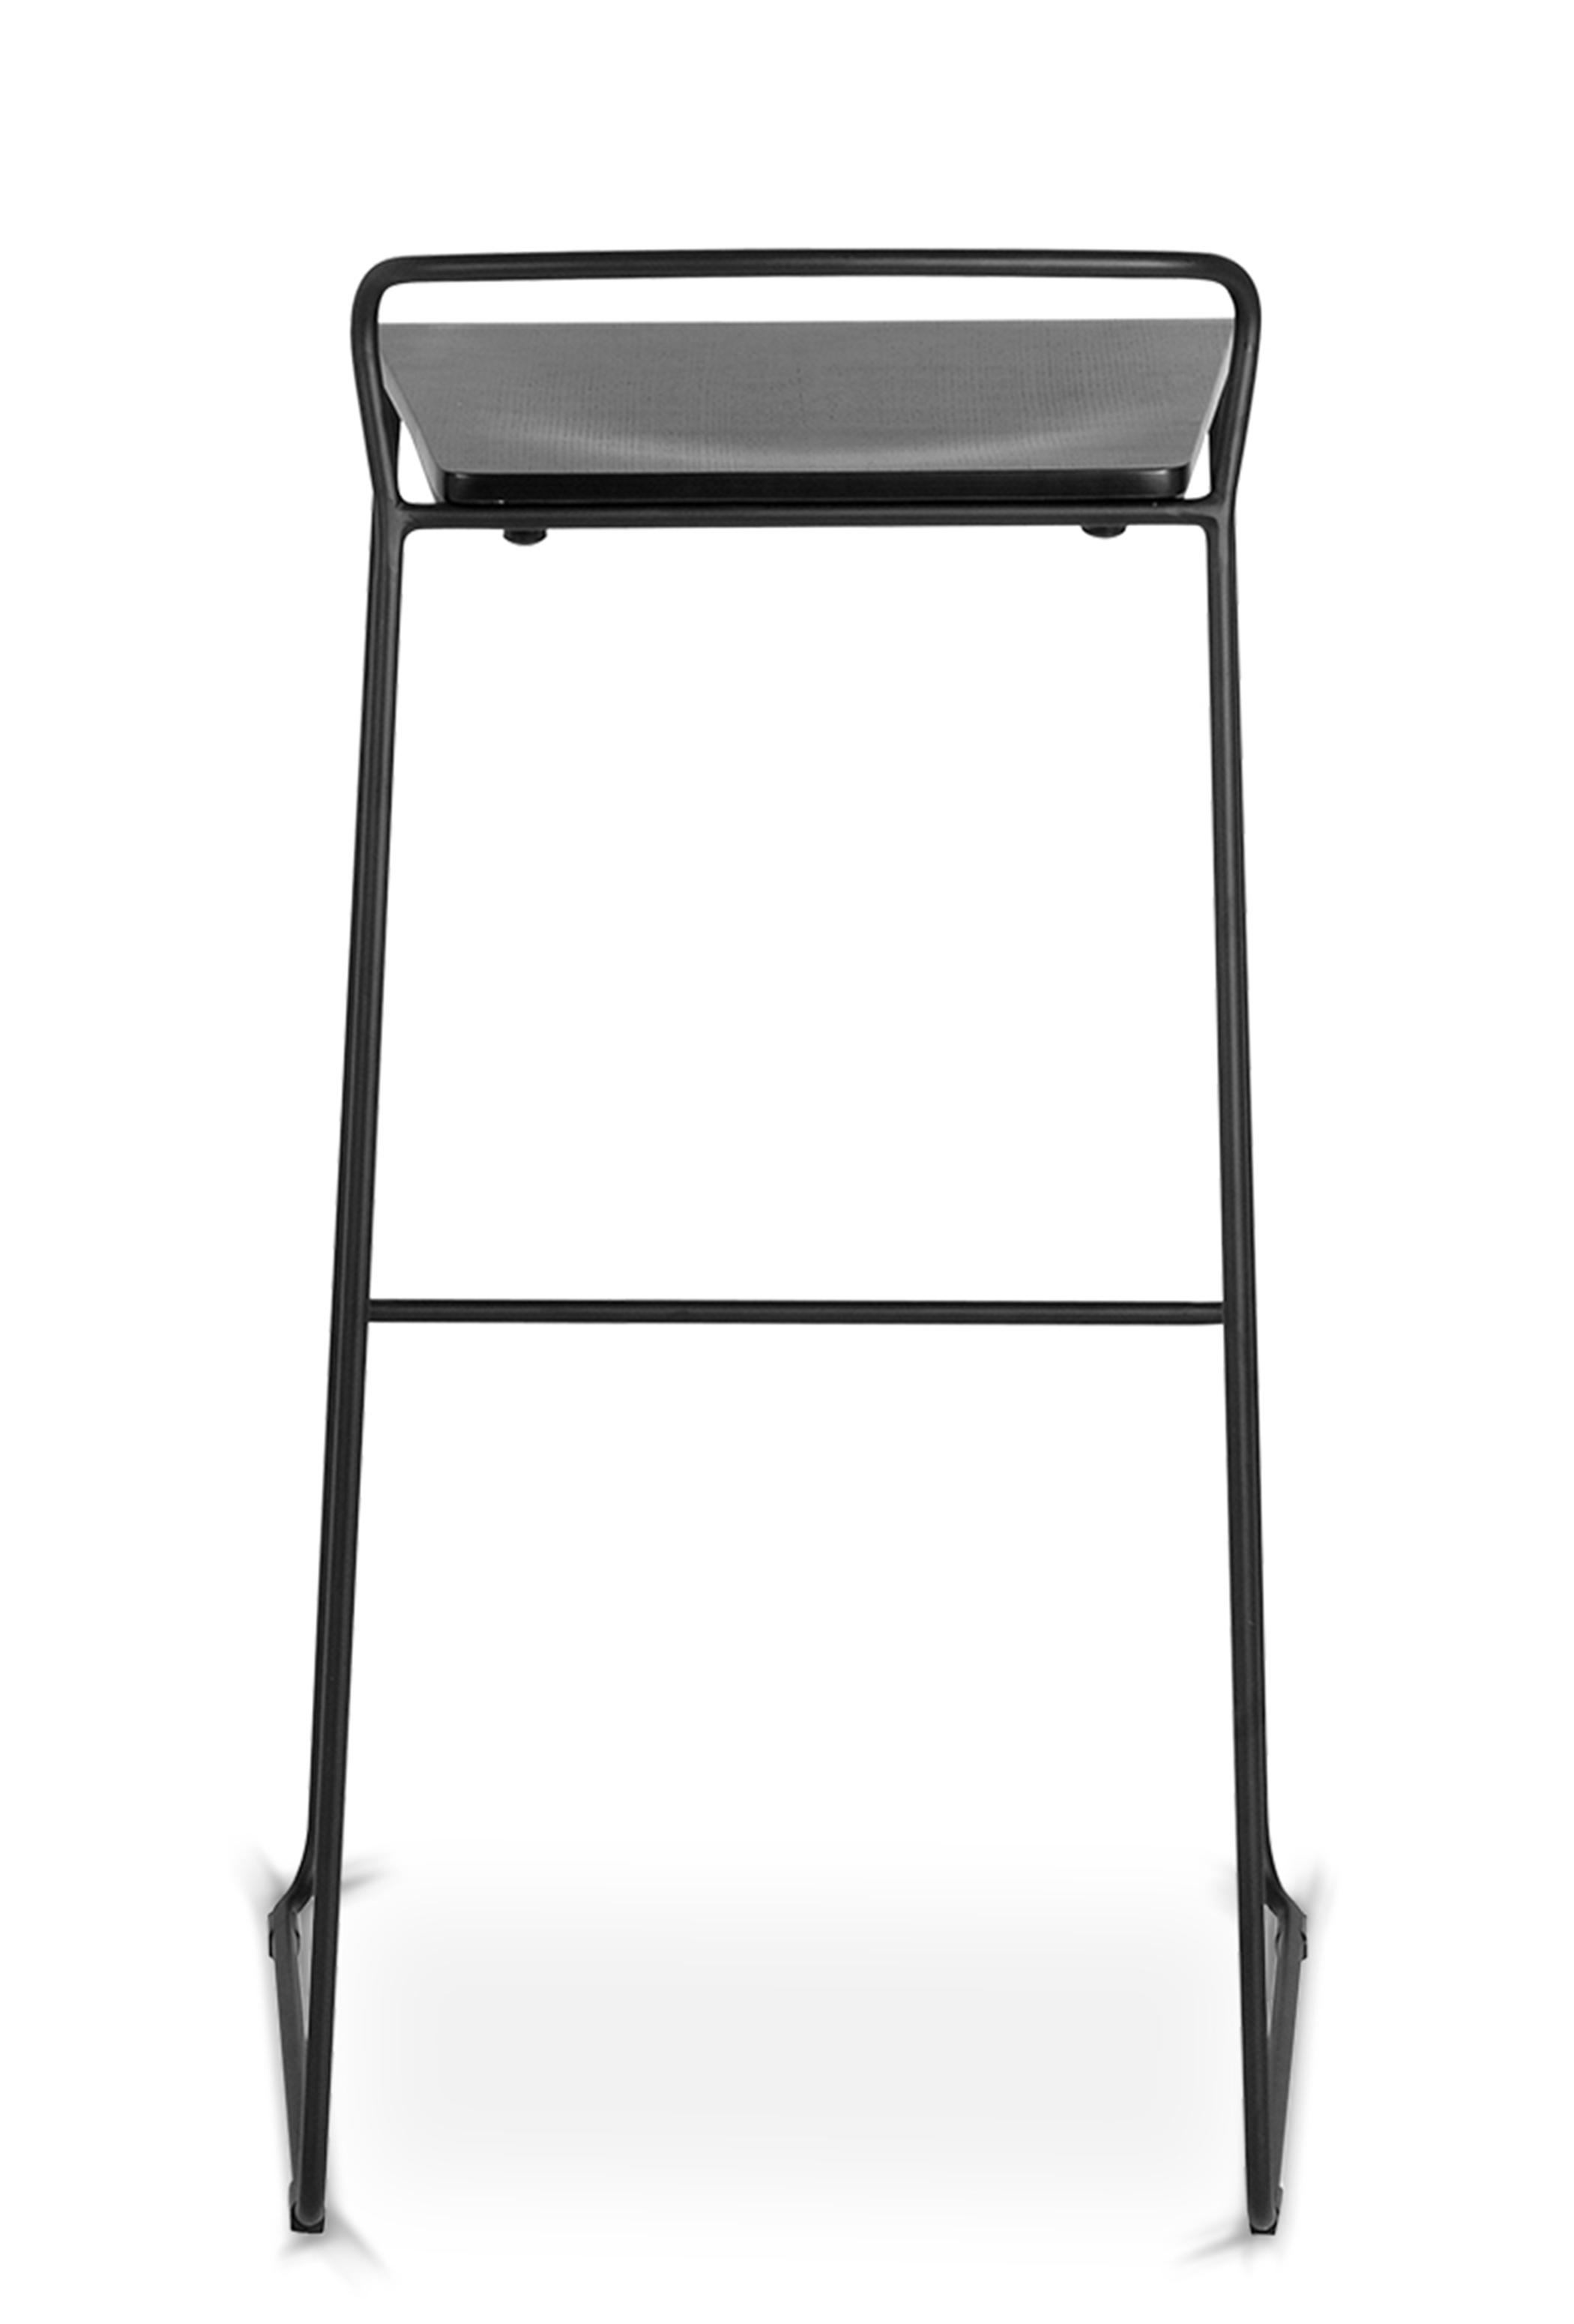 WS - Transit high stool - Black ash (Back)